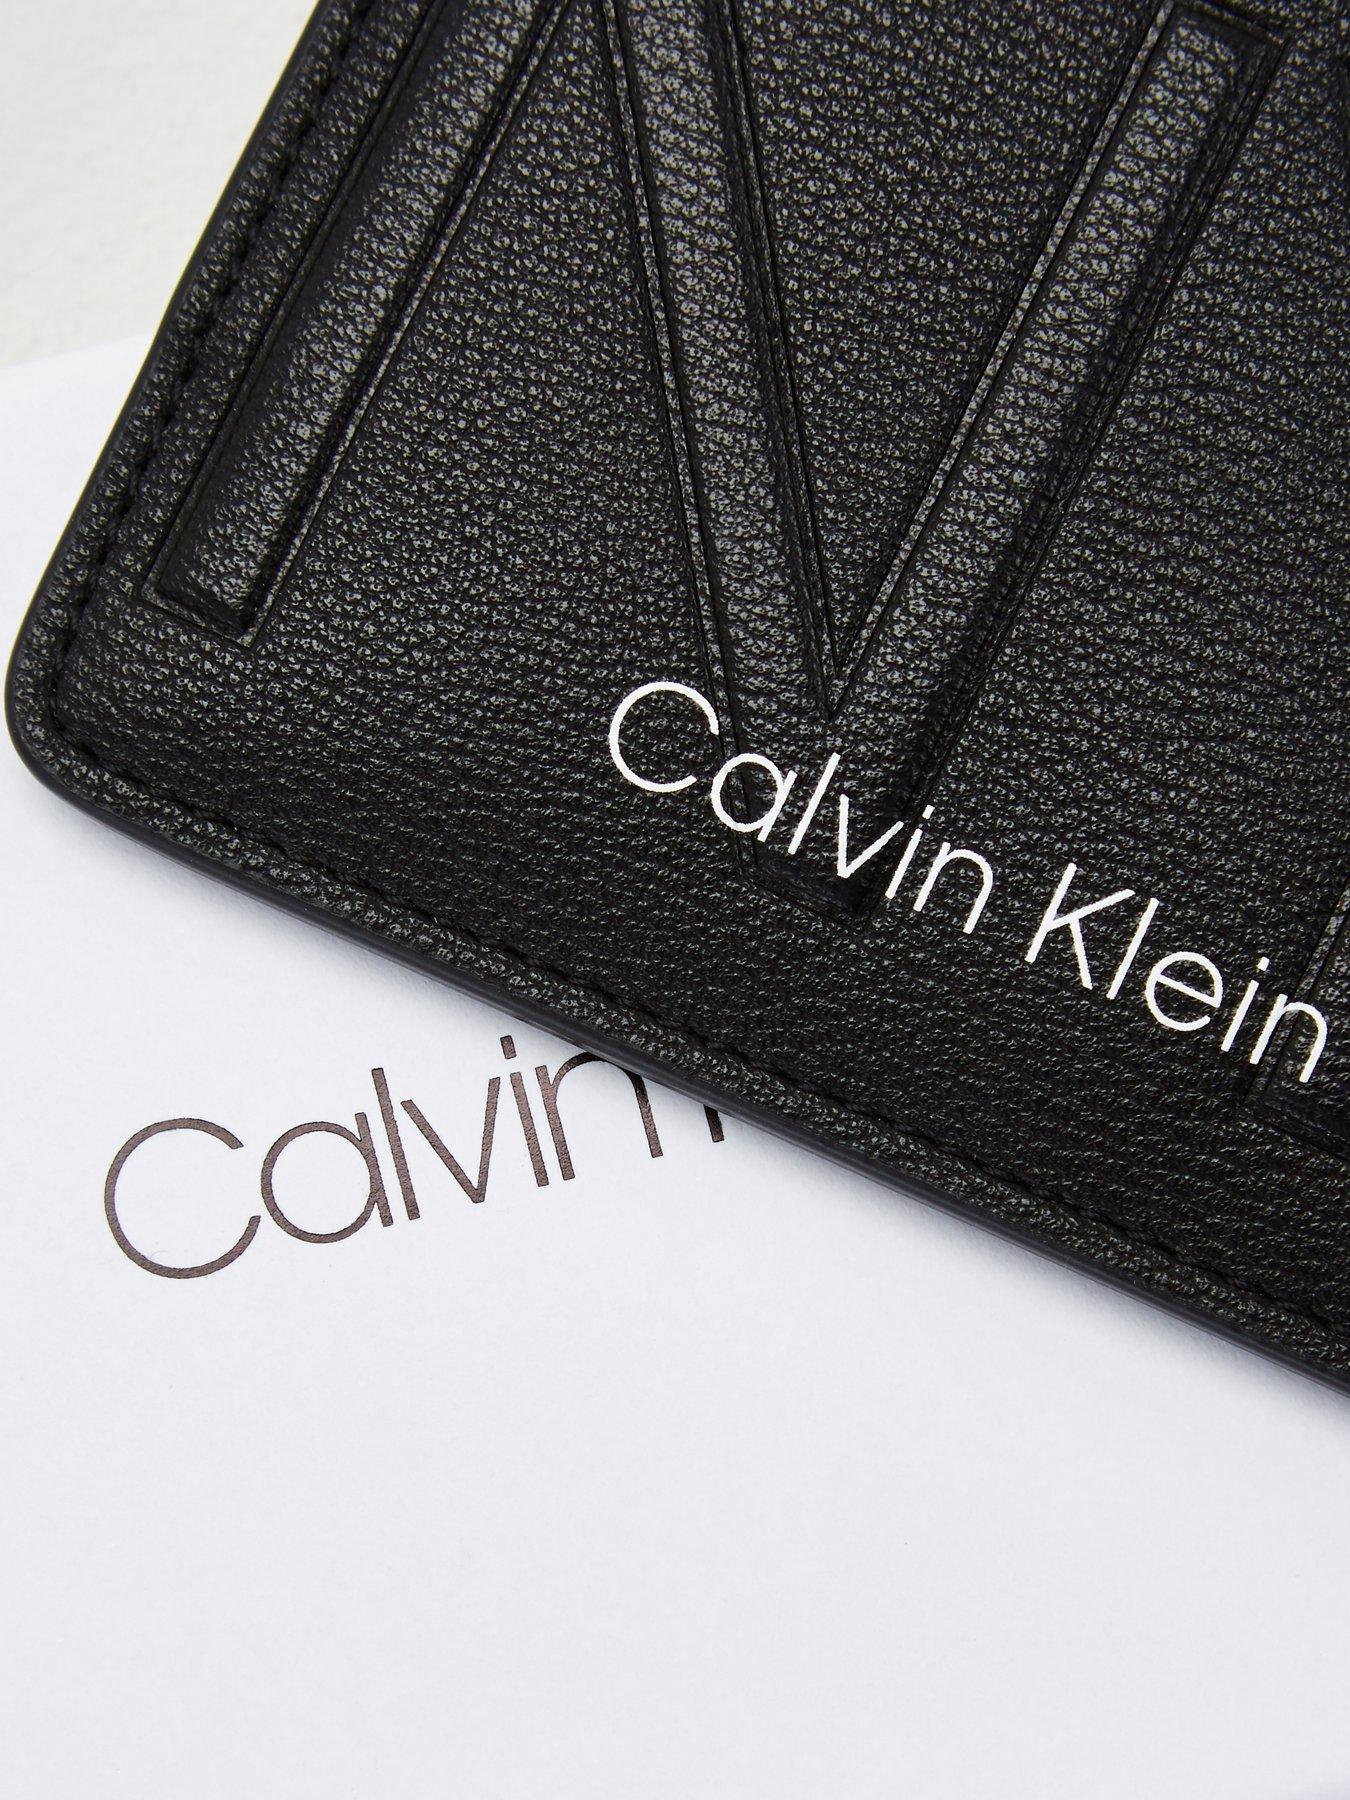 calvin klein credit card holder